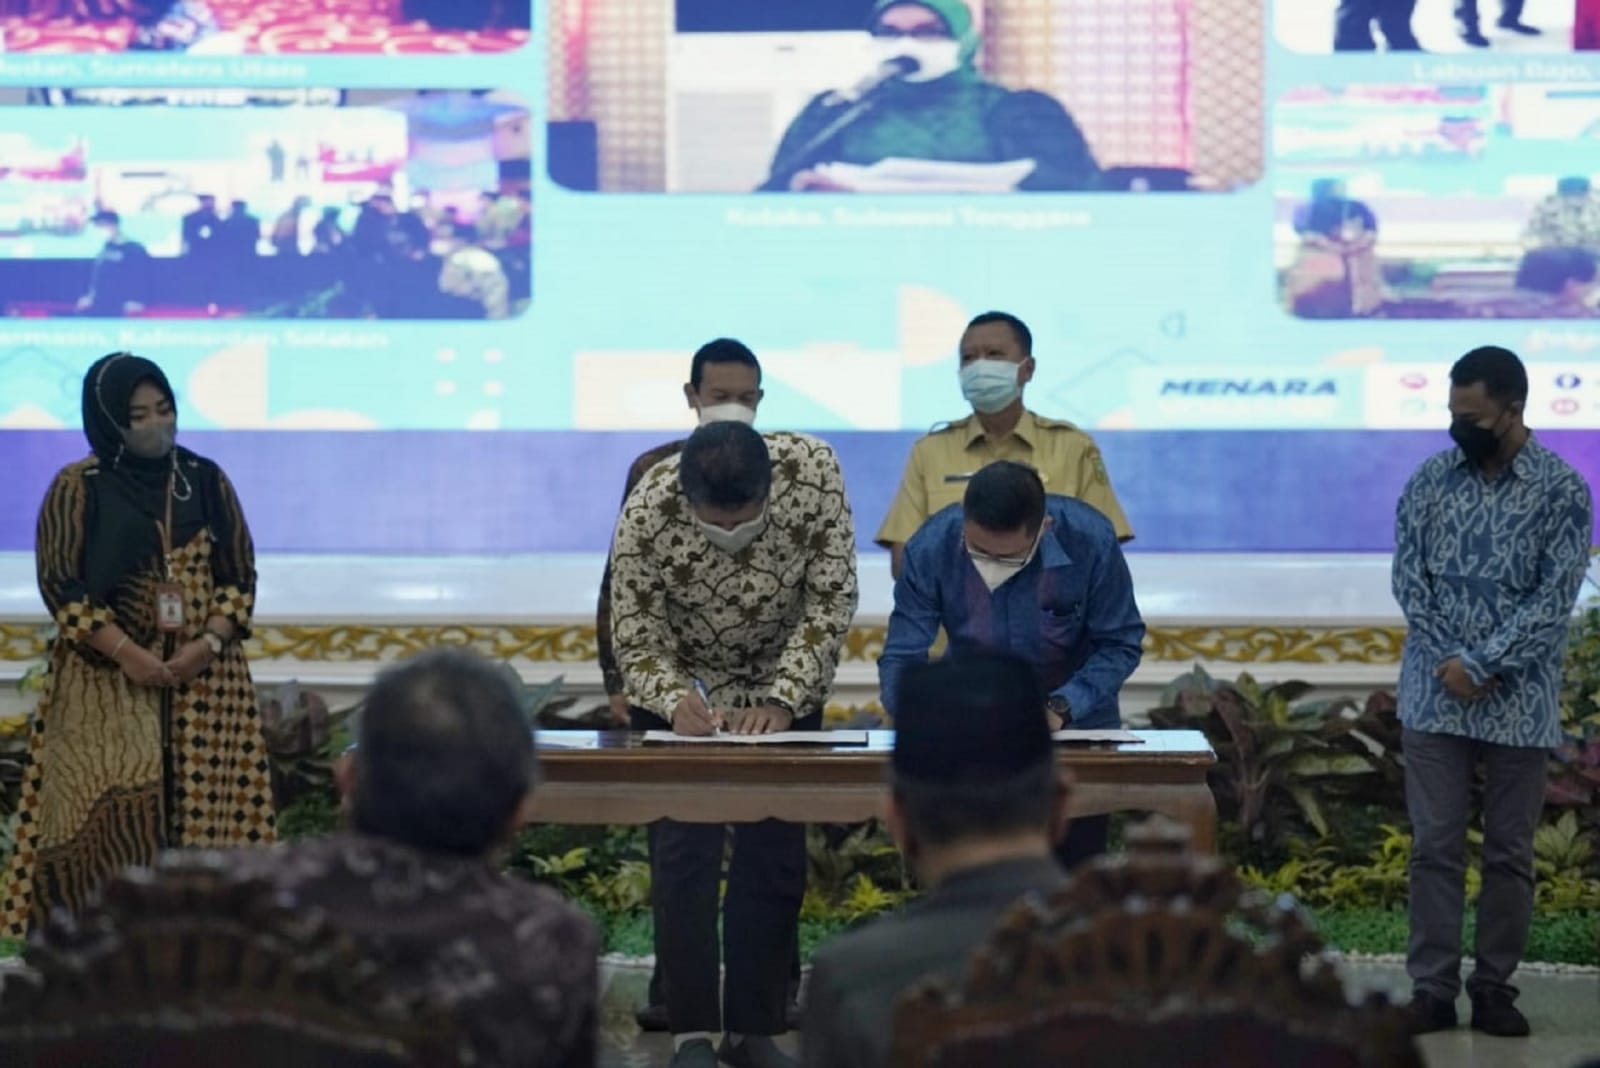 Dukung Program Menara Vokasi, PHR WK RokanTeken MoU dengan Dua Politeknik di Riau